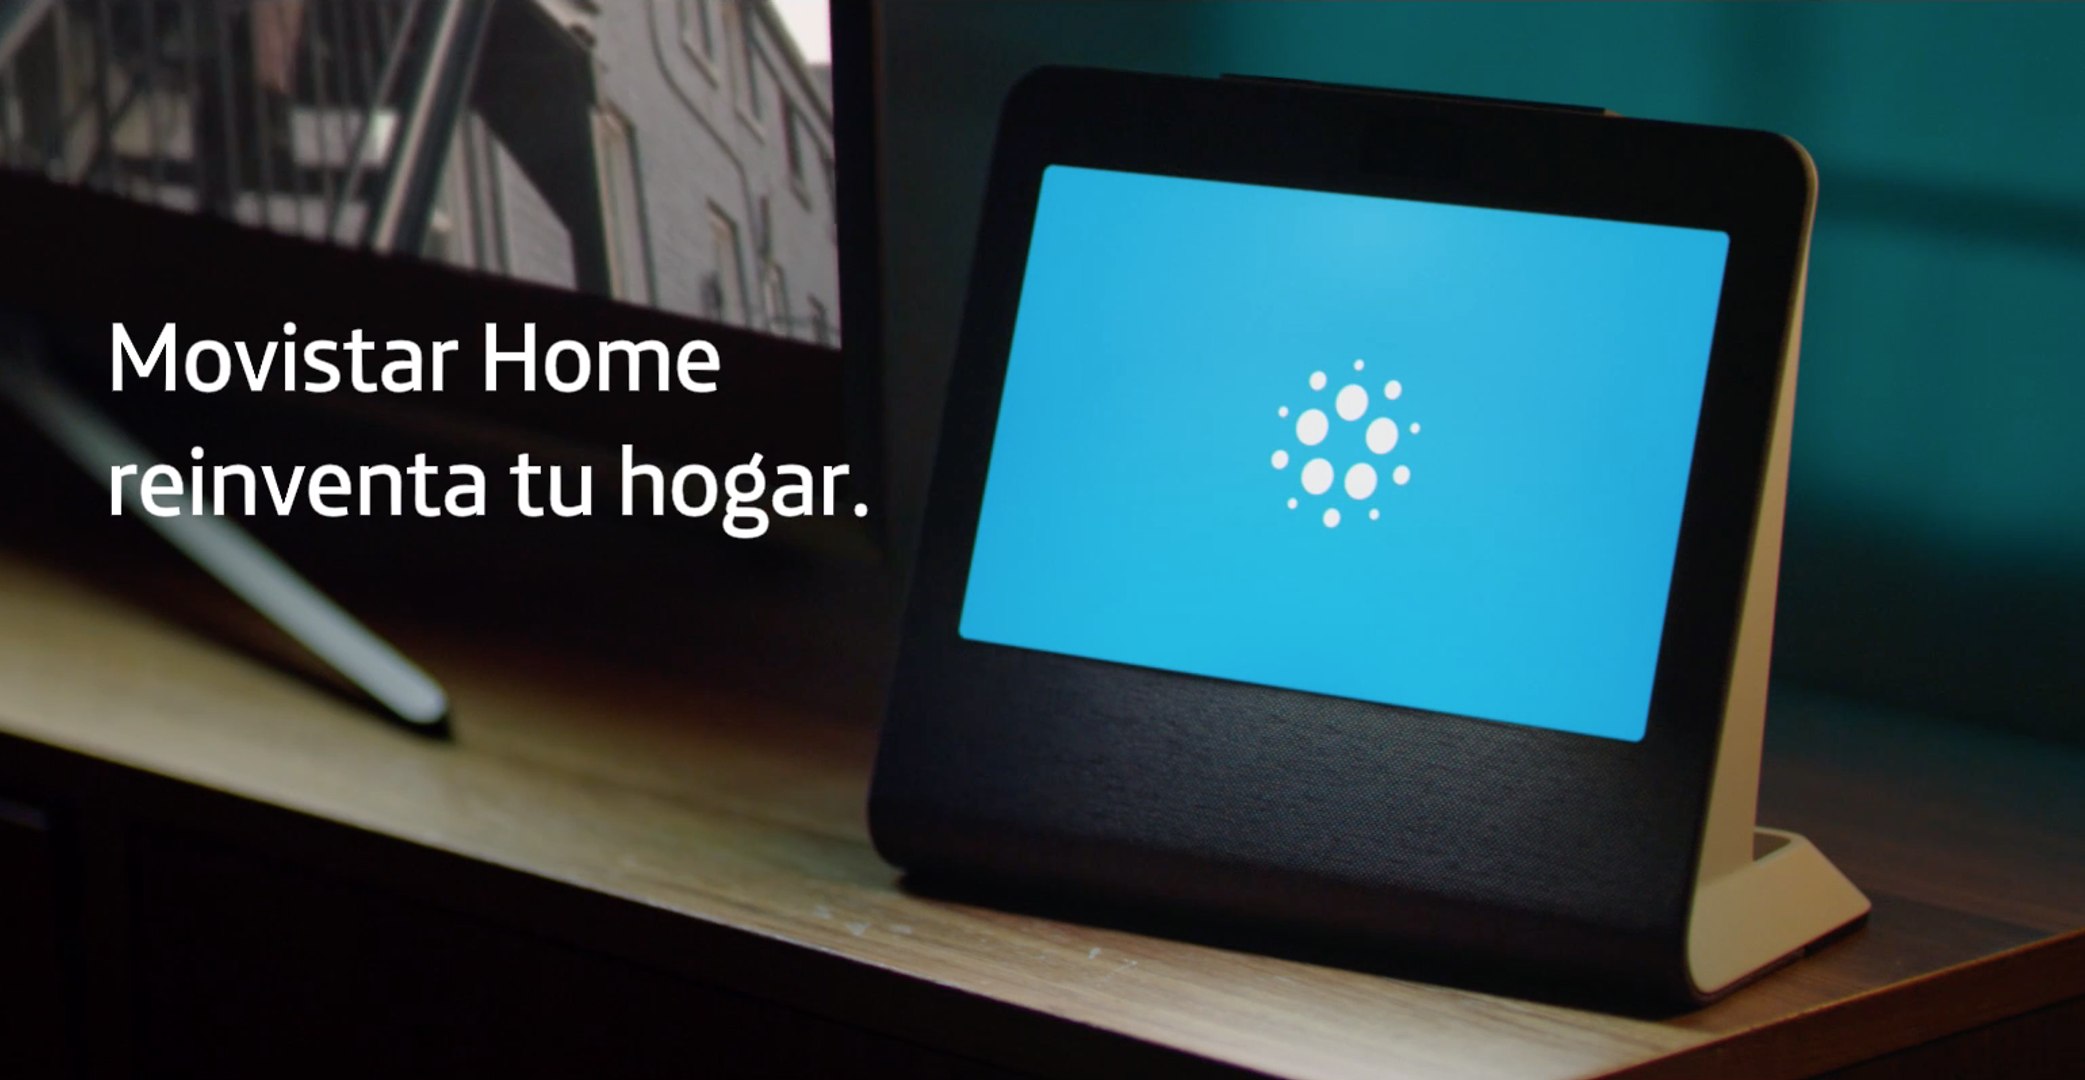 HomePod, el altavoz inteligente de Apple reinventa la música en el hogar